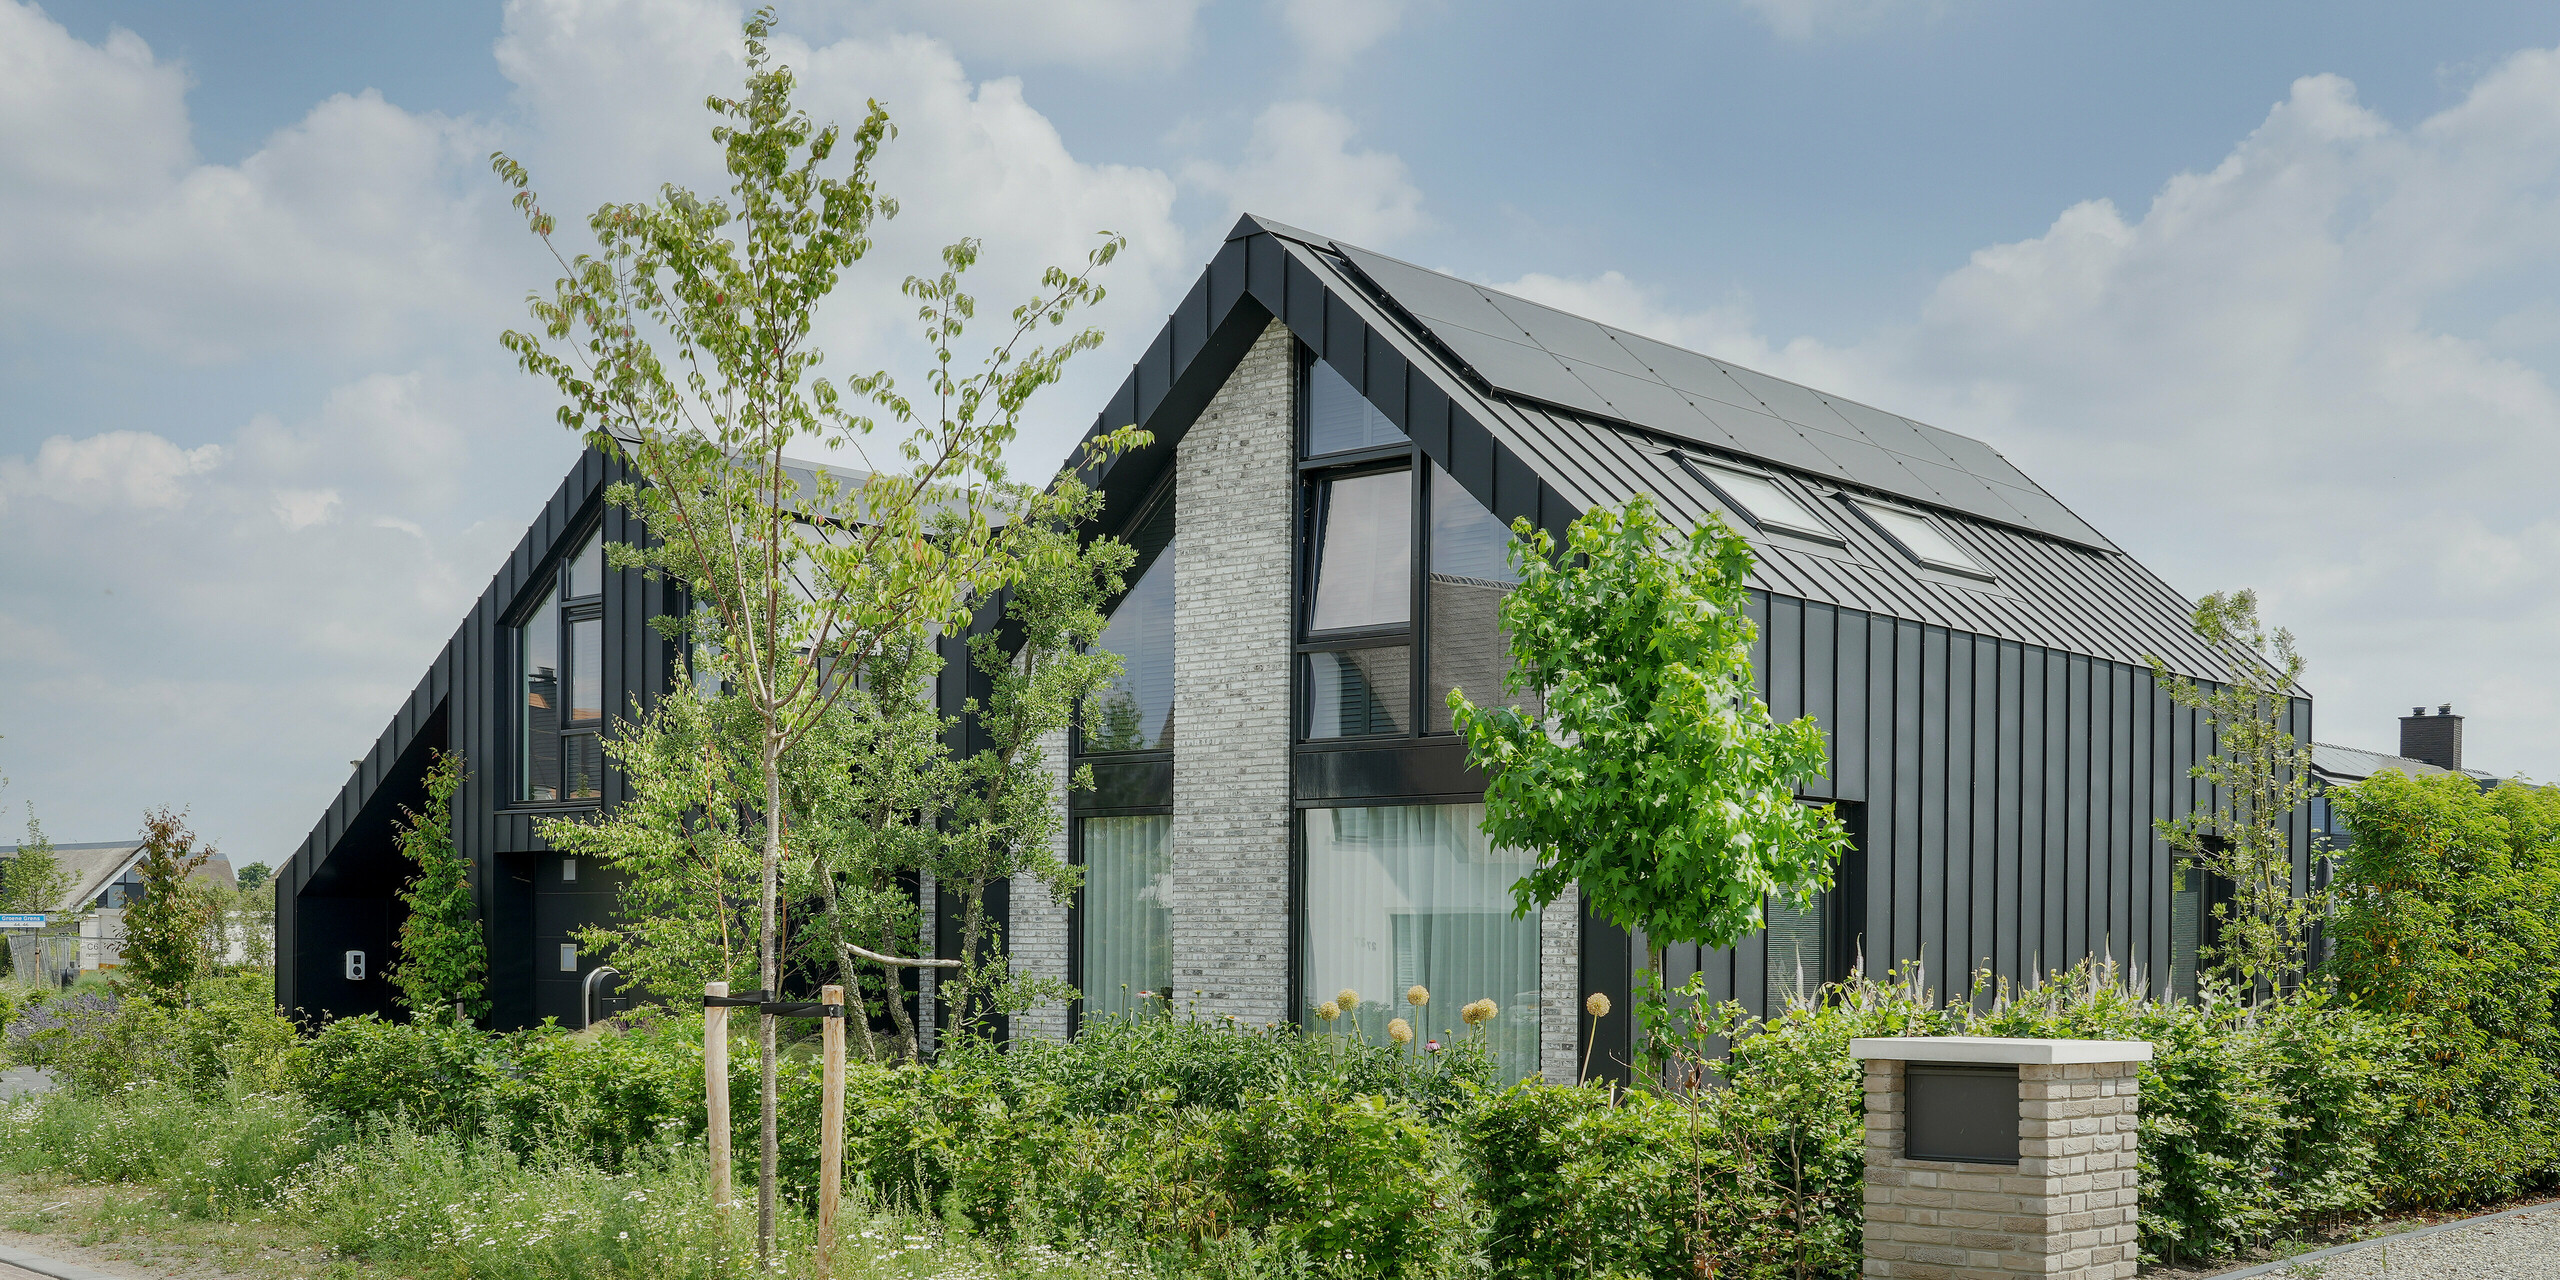 Moderne Wohnarchitektur in Veenendaal, Niederlande, geprägt durch schwarzes Aluminium von PREFA auf dem Dach und Teilen der Fassade. Das Haus mit seinen spitzen Giebeln und dem Stufendach hat eine starke geometrische Form. Die Verwendung von hellgrauem Naturstein als Teil der Fassade bietet einen subtilen Kontrast zu den dunklen Stehfalzziegeln. Das Haus ist von einer natürlichen, wilden Gartenlandschaft und gepflasterten Wegen umgeben, die eine Verbindung zwischen der modernen Architektur und der natürlichen Umgebung schaffen.